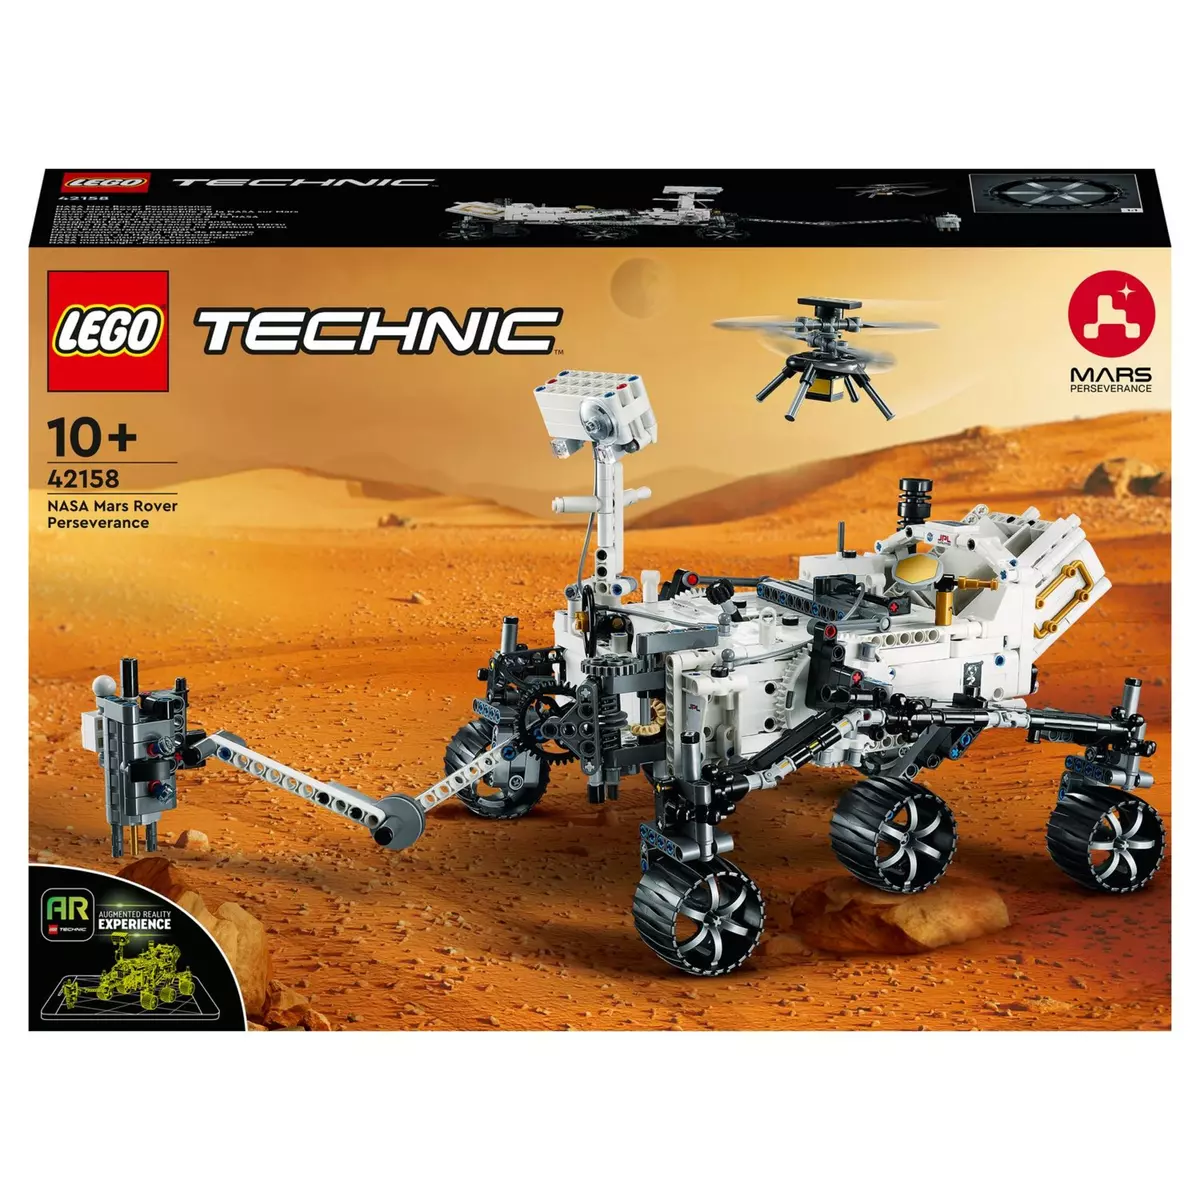 LEGO Technic 42155 Le Batcycle de Batman, Construction de Maquette